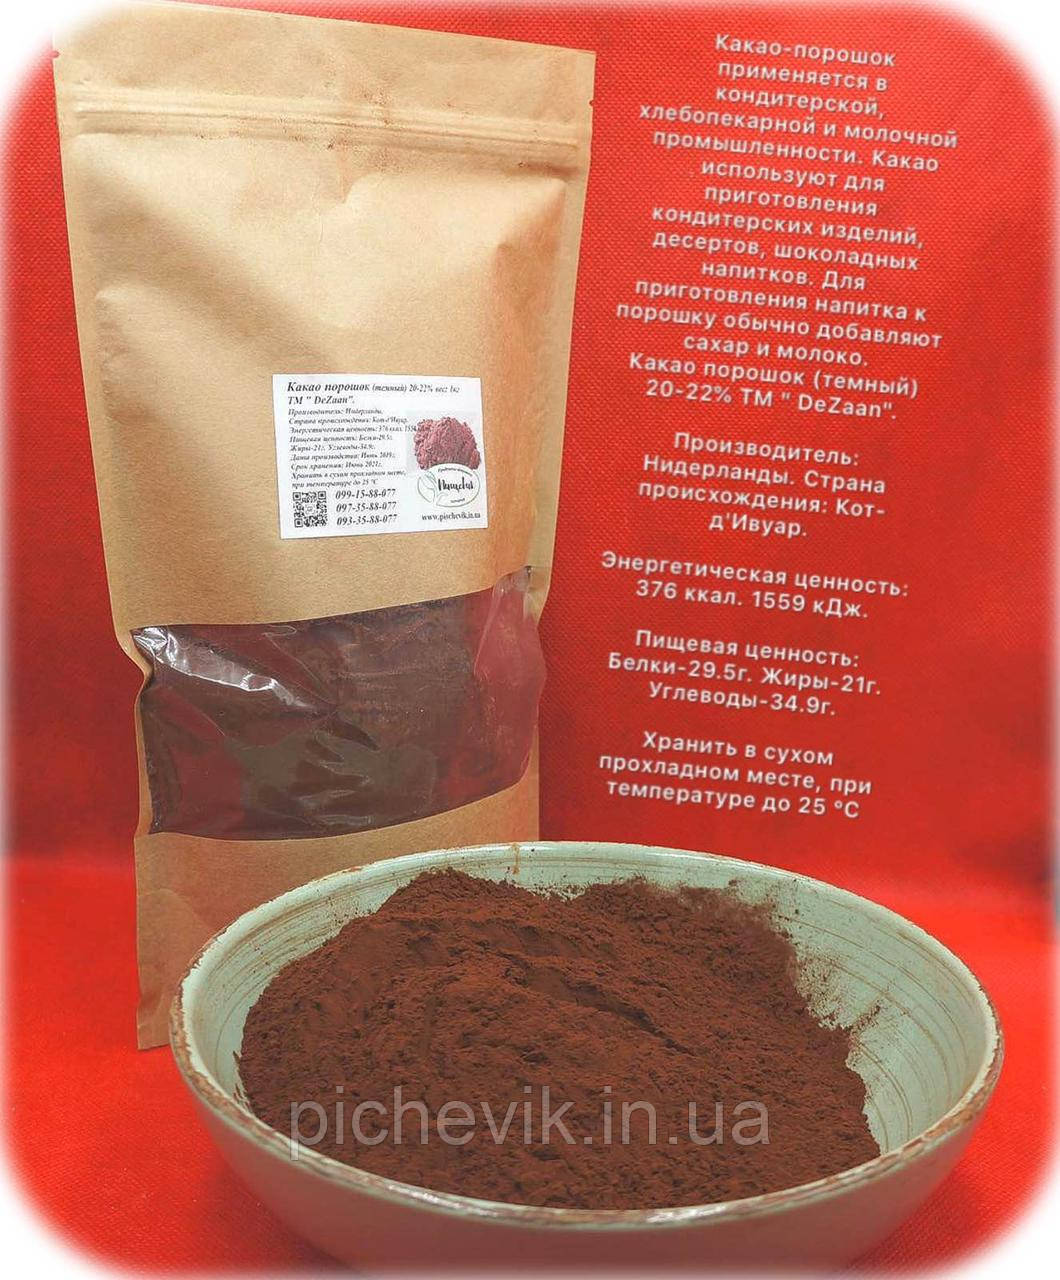 Какао порошок темний 20-22% (Нідерланди) ТМ DeZaan вага:500грамм.